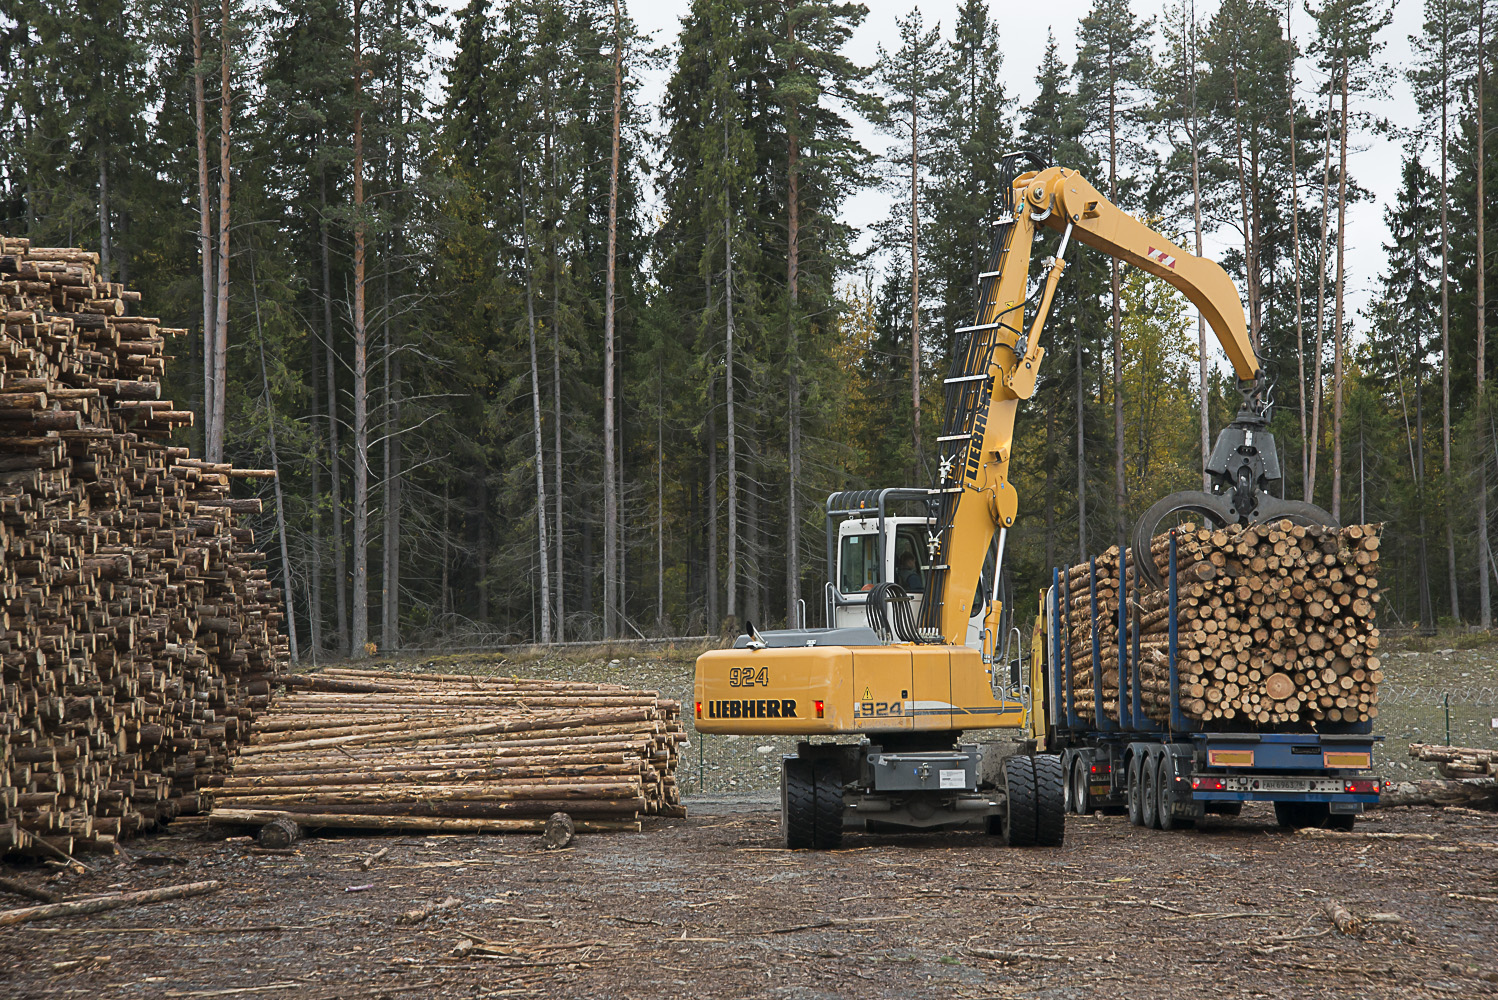 Лесозаготовка деревообработка. Лесная промышленность Канады. Лесная промышленность Сахалина. Лесная промышленность Урала. Лесная, деревообрабатывающая и лесохимическая промышленность Урала.